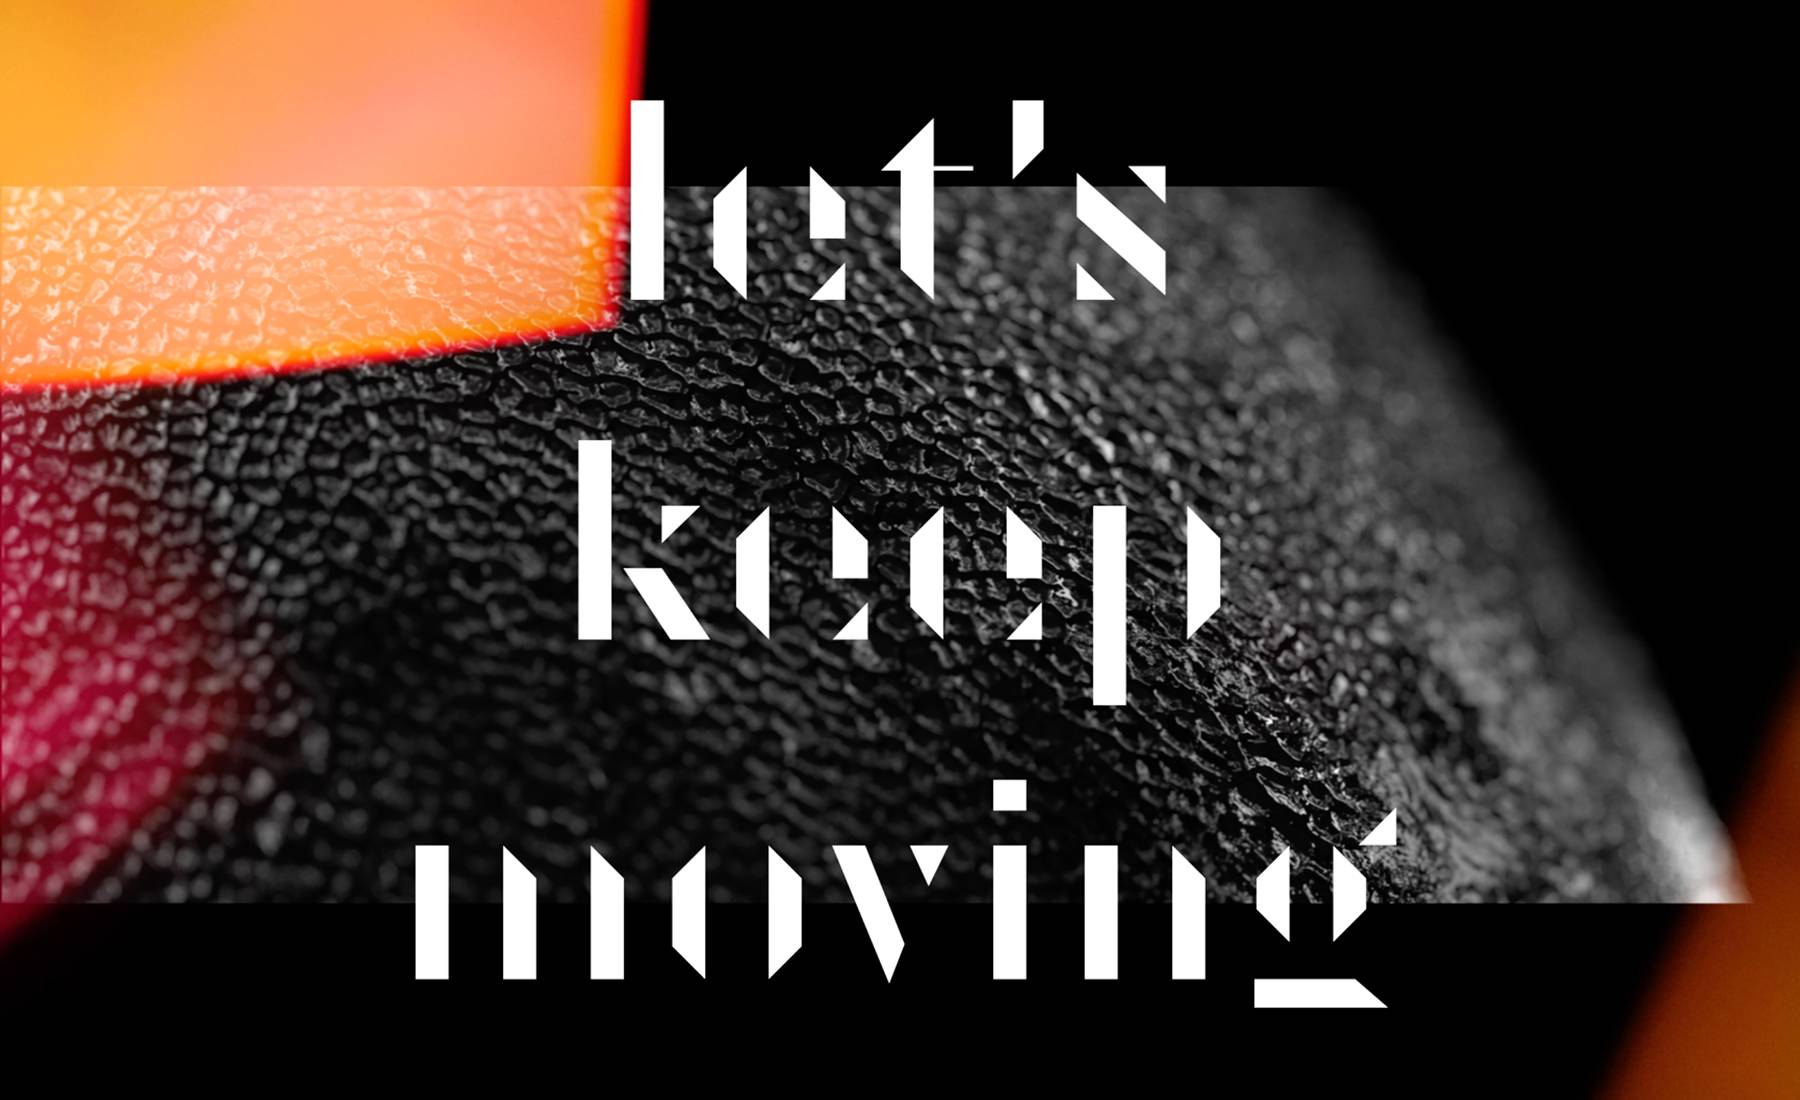 Keep moving forward. Keep on moving kastuvas feat. Emie. Kastuvas emie keep